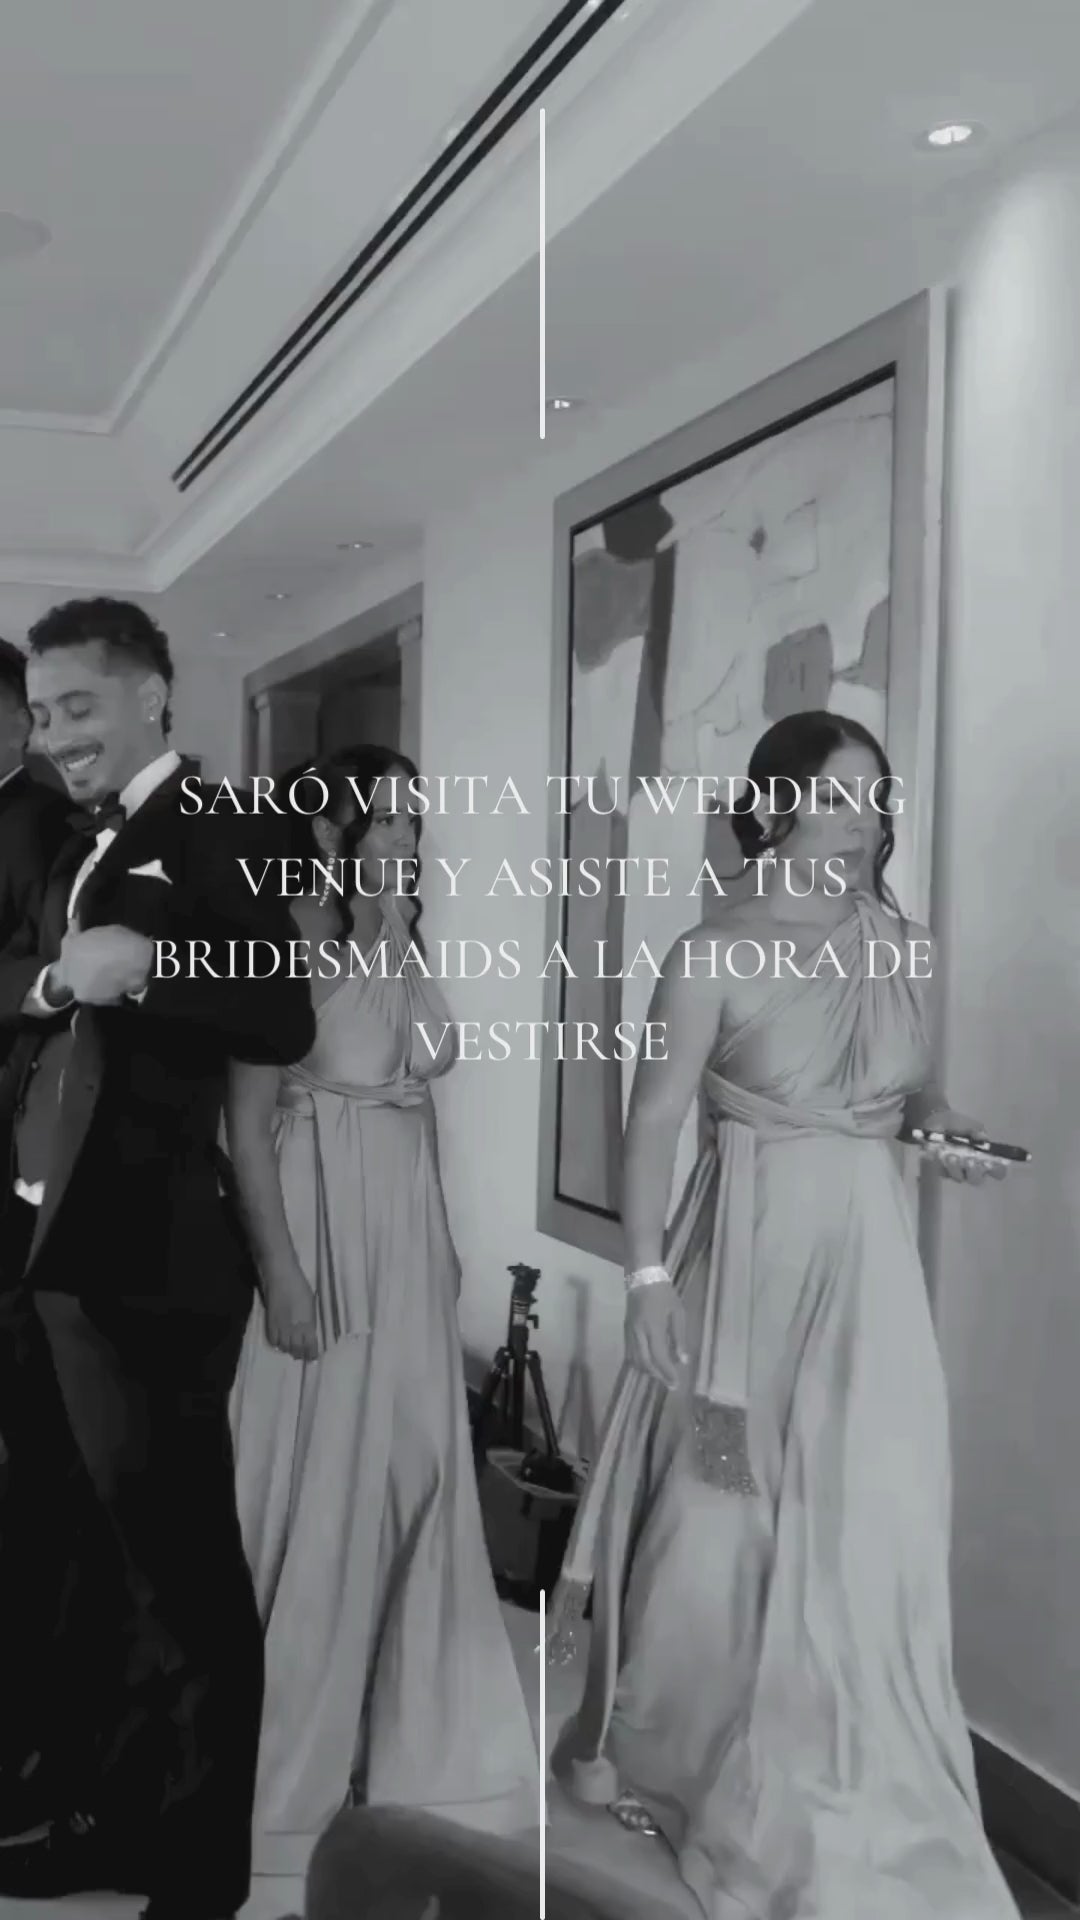 Load video: SARÓ VISIT OUR WEDDING